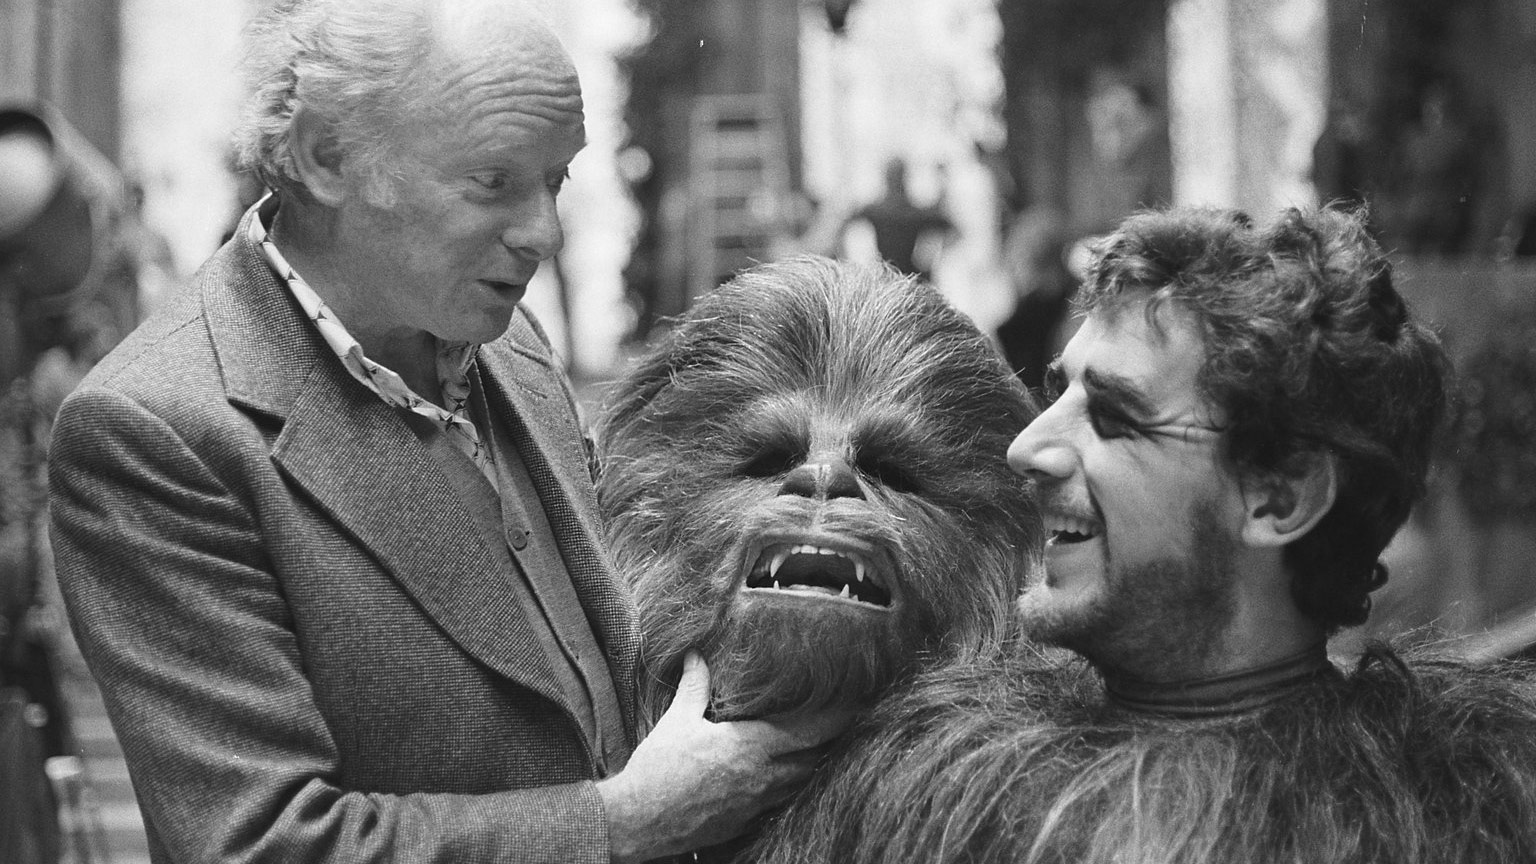 Peter Mayhew, intéprete original de Chewbacca em Star Wars, morre aos 74 anos